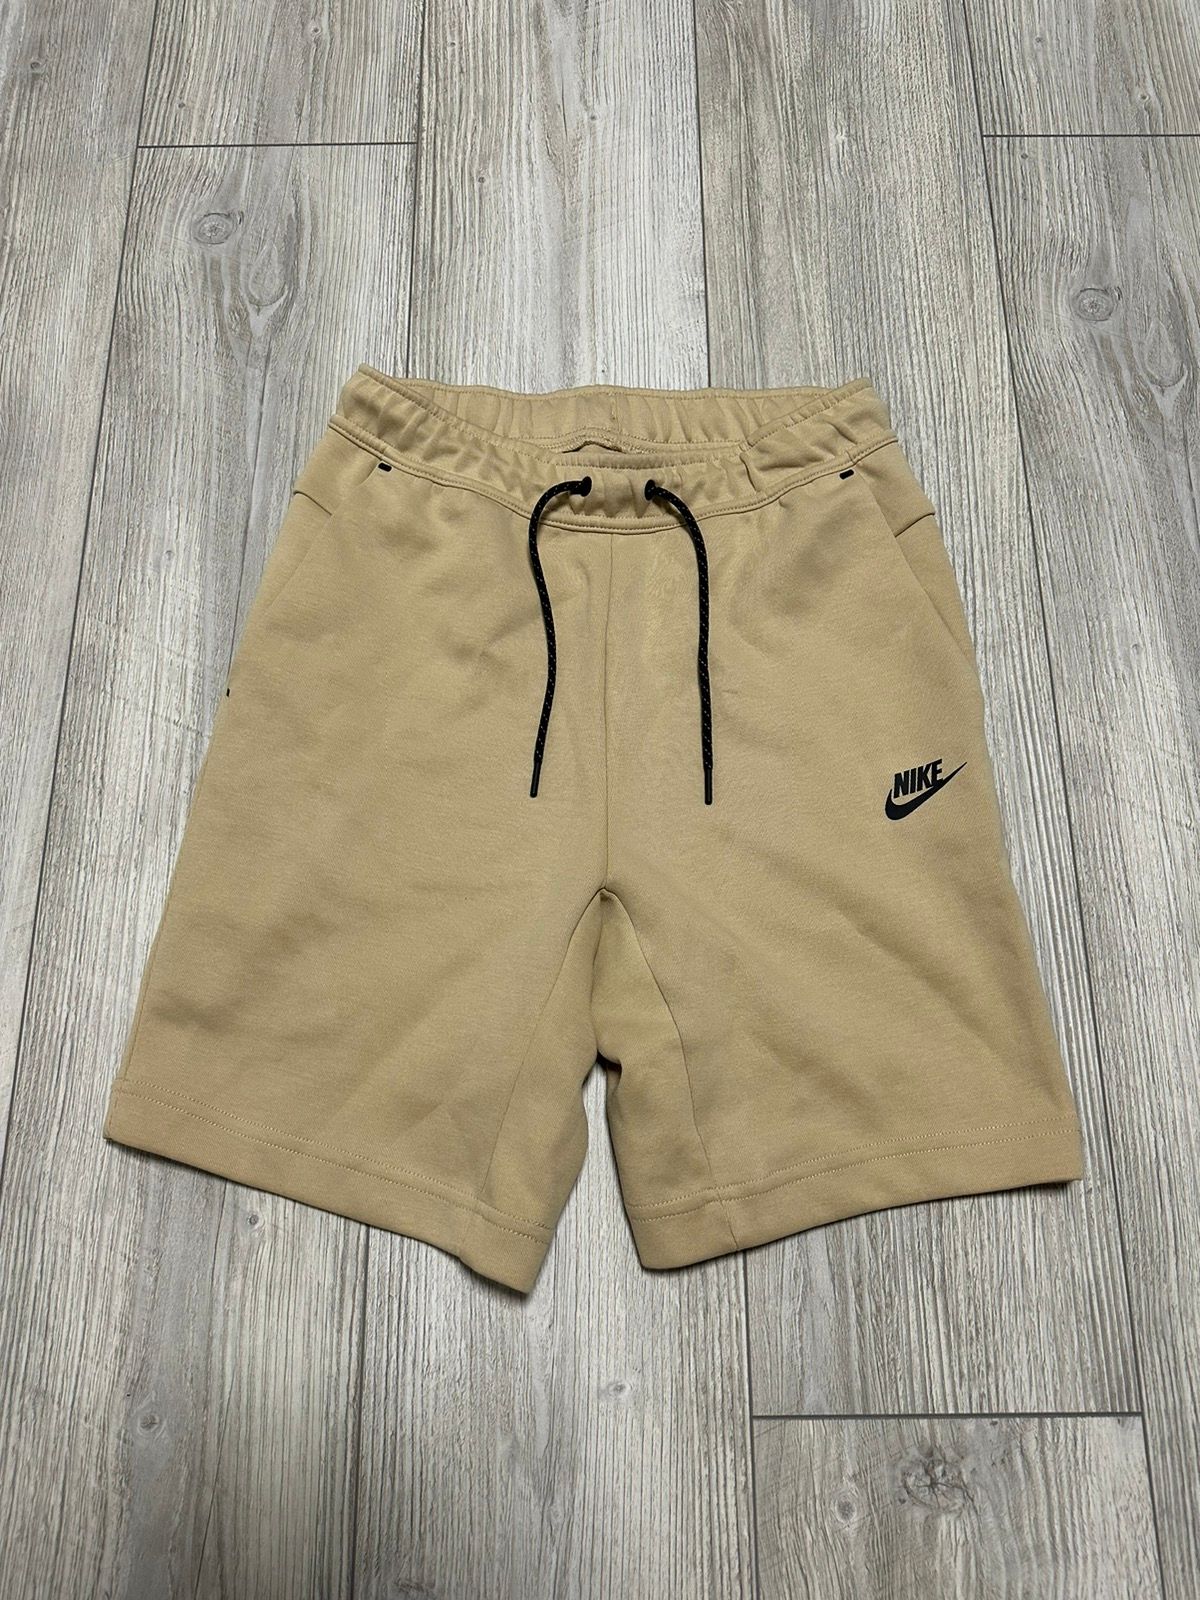 Nike Nike Sportswear Tech Fleece Shorts | Grailed